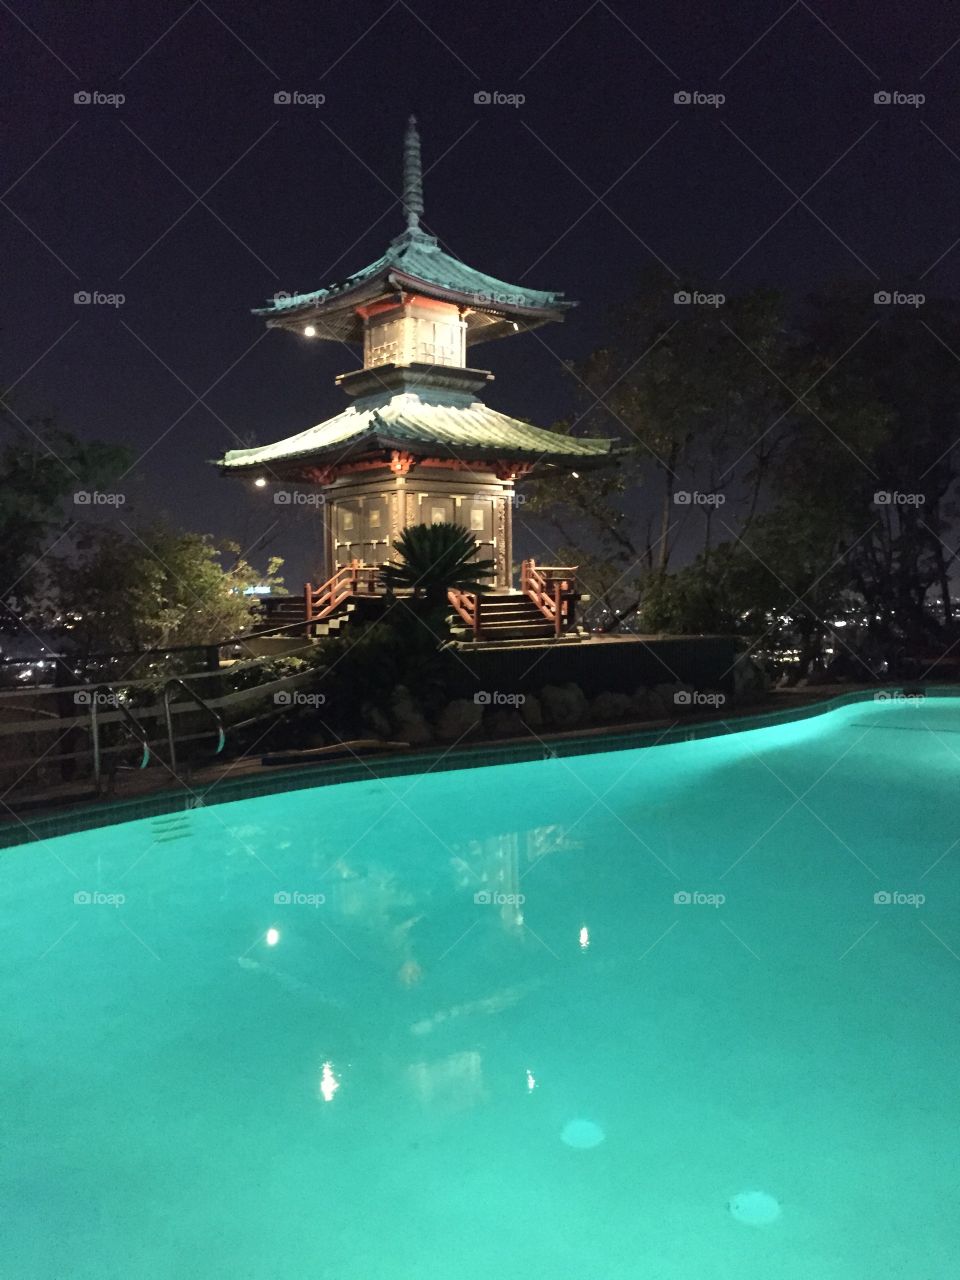 Pool Pagoda at Night